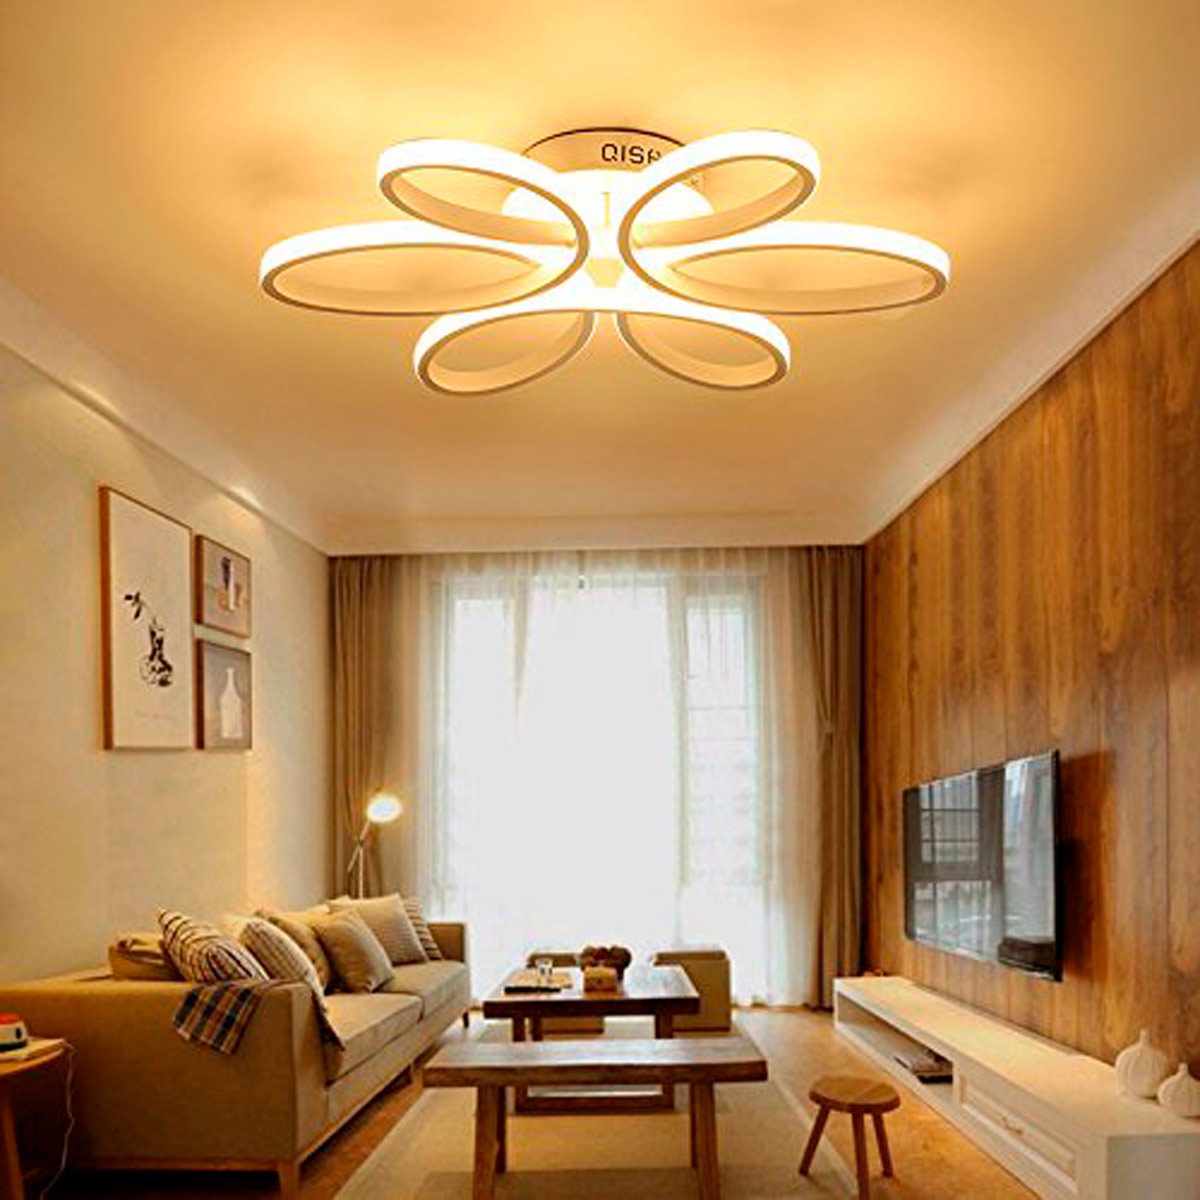 Lighting Living Room Ideas - Room Living Lighting Led Inspired Classy ...